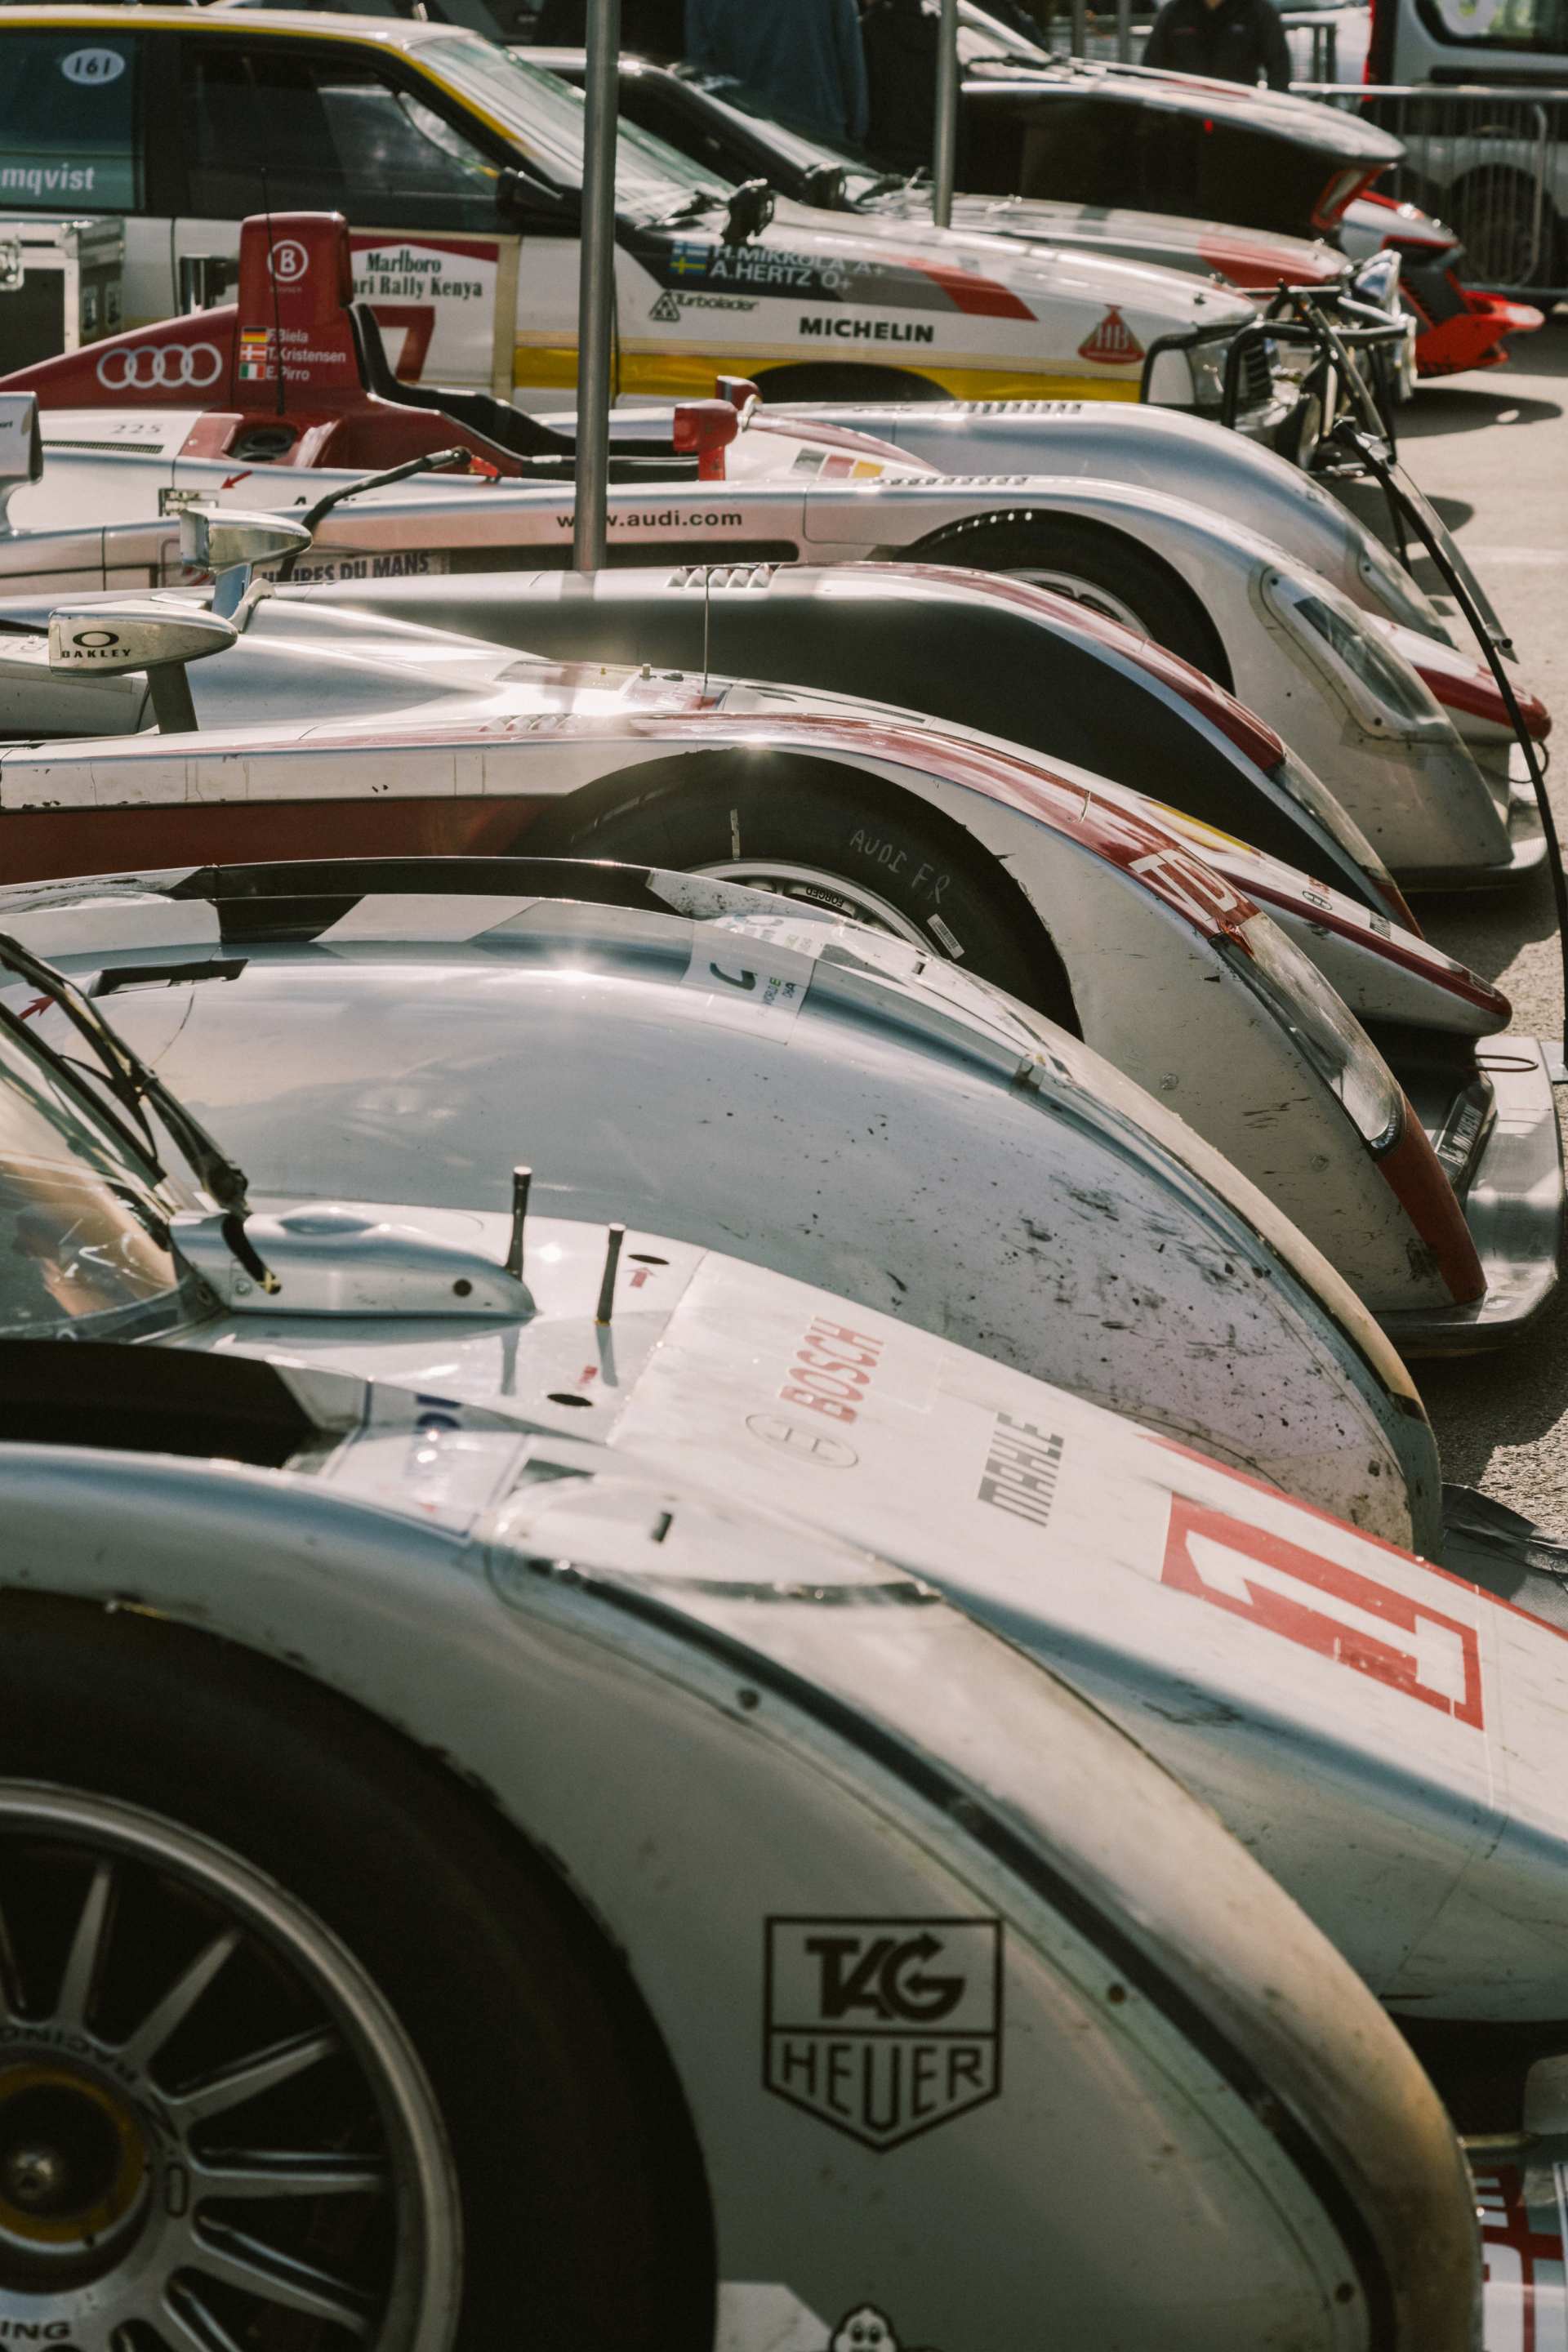 Several Audi racing cars.